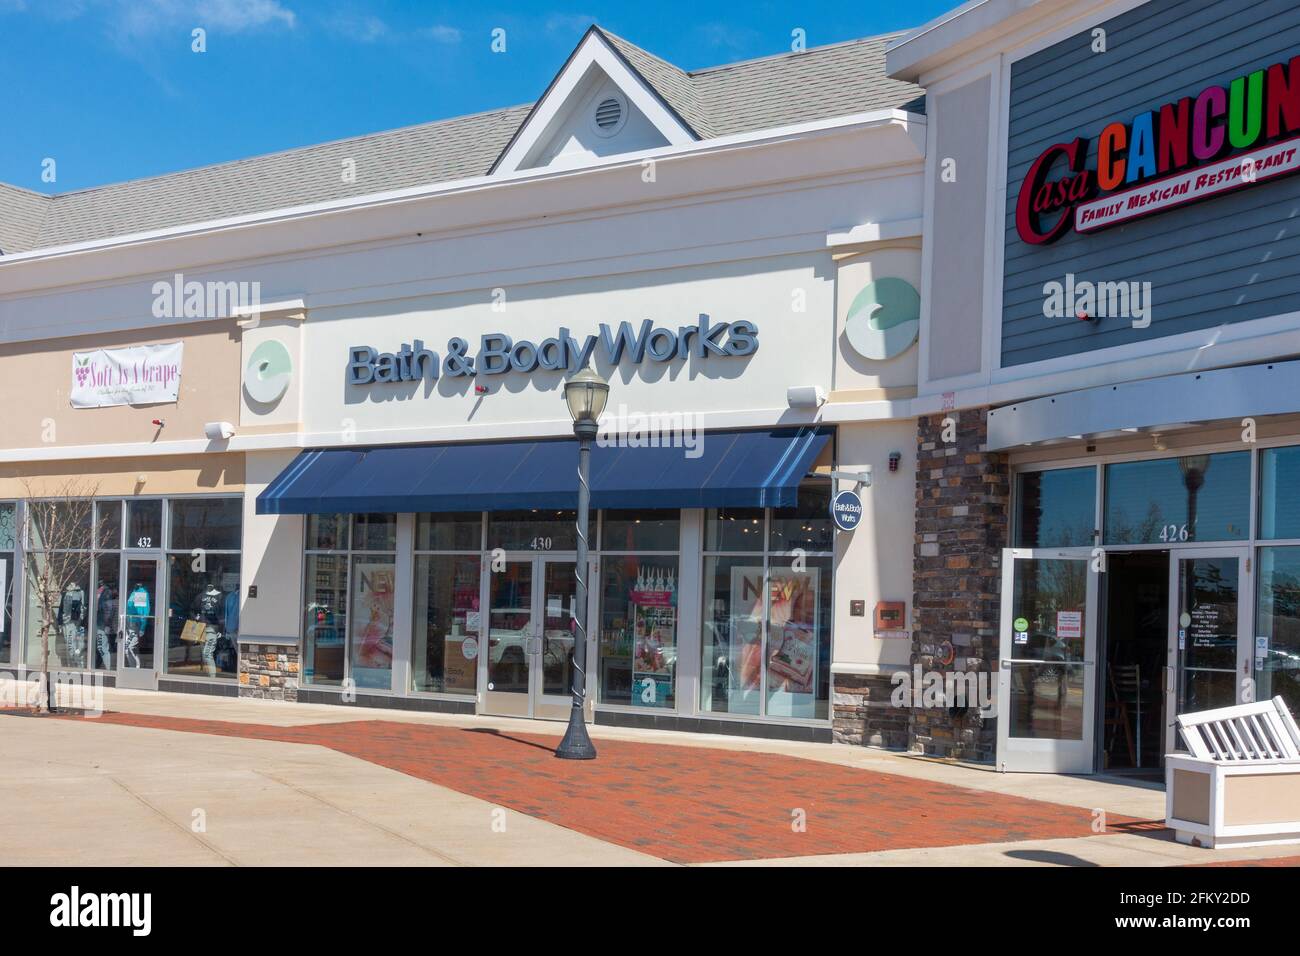 Bath & Body Works Retail Store at Wareham Crossing, Wareham, Massachusetts USA Stock Photo